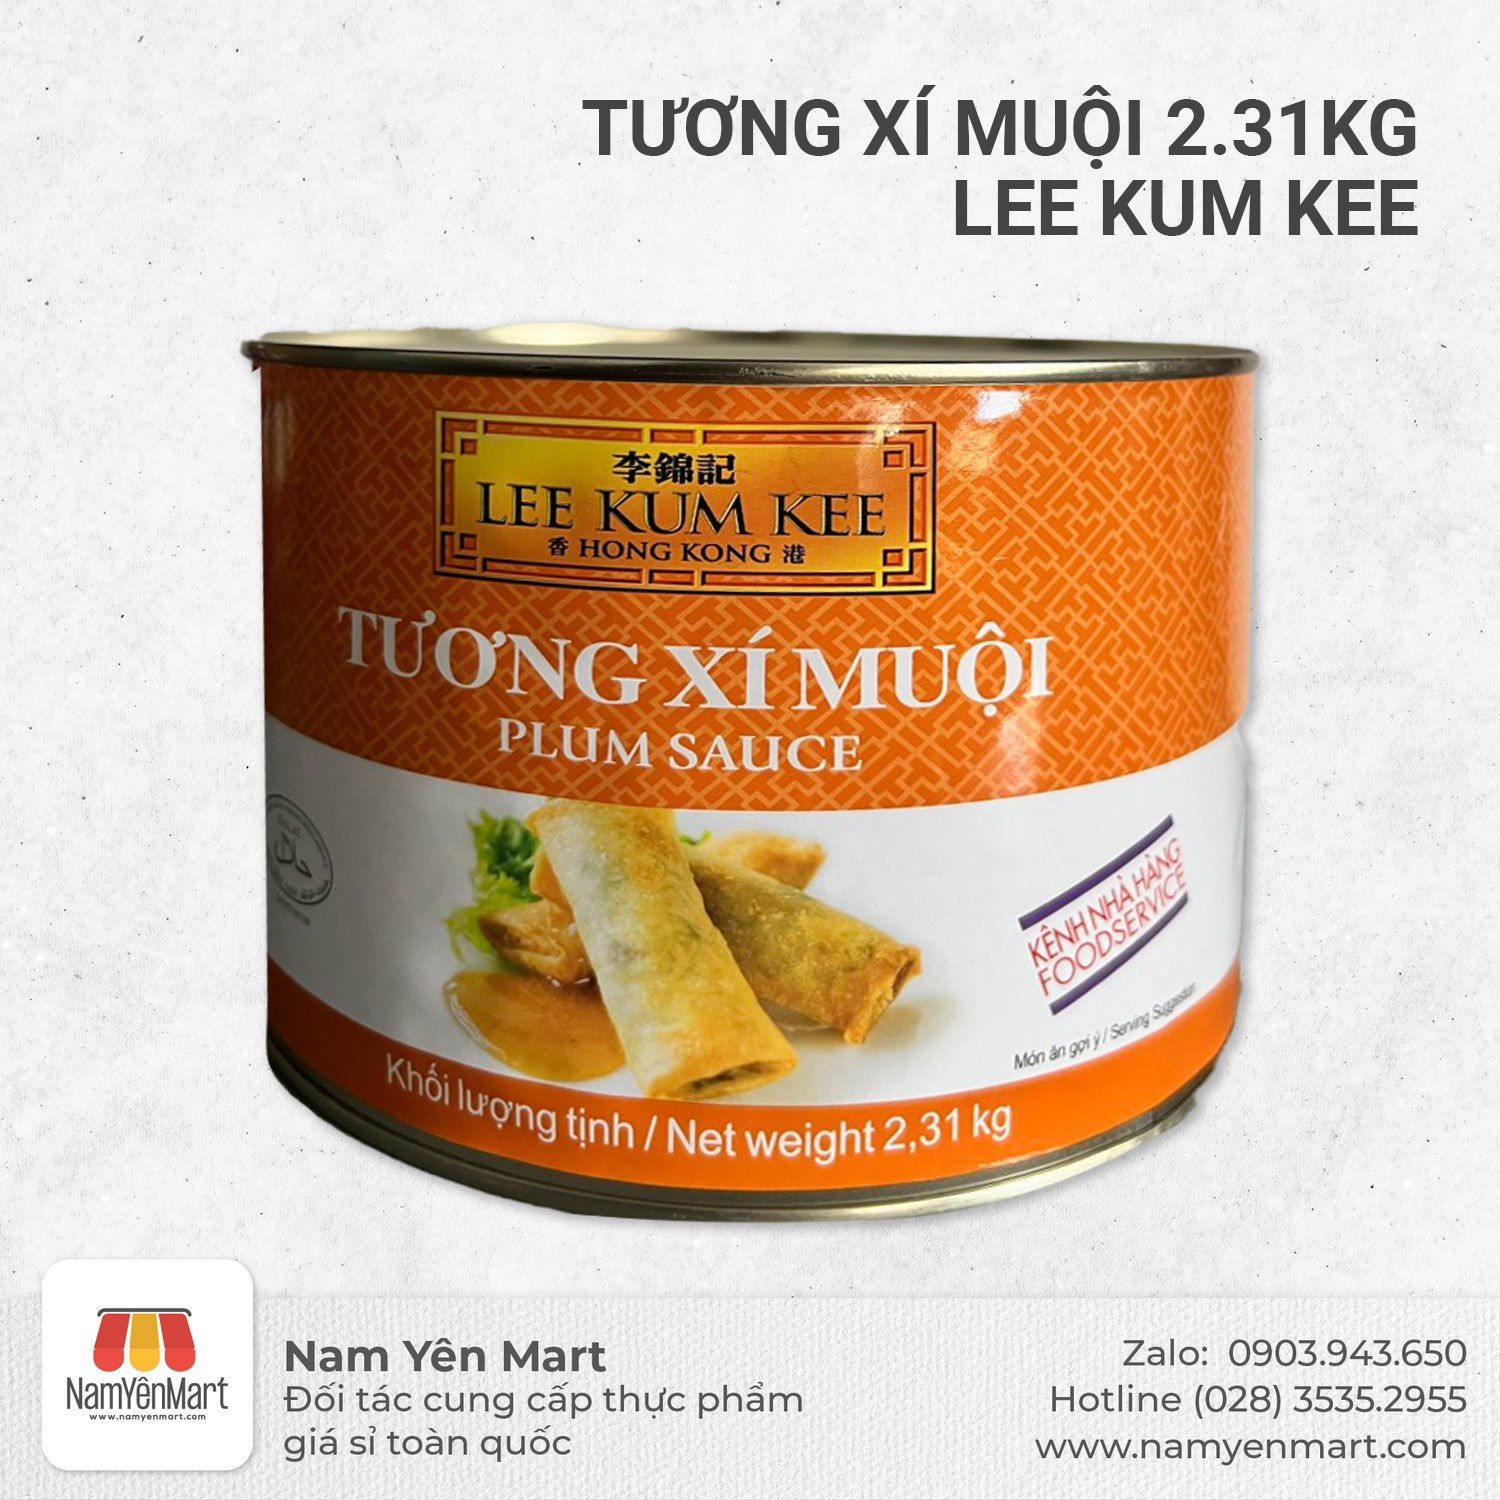  Tương xí muội Lee Kum Kee (2.31 kg) 